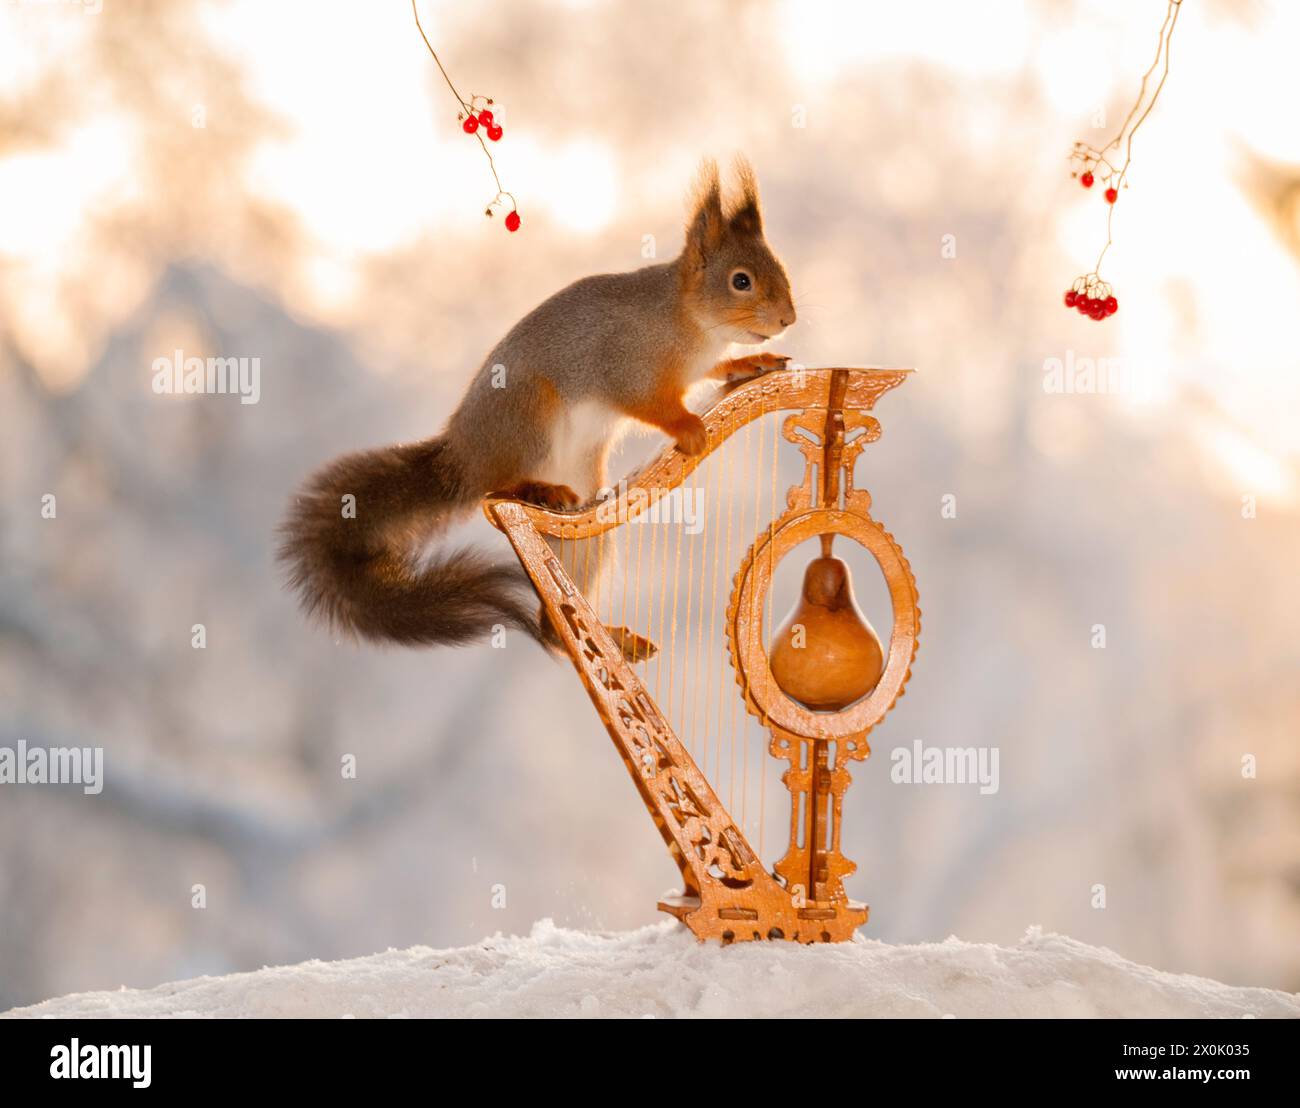 L'écureuil roux est debout sur une harpe dans la neige Banque D'Images